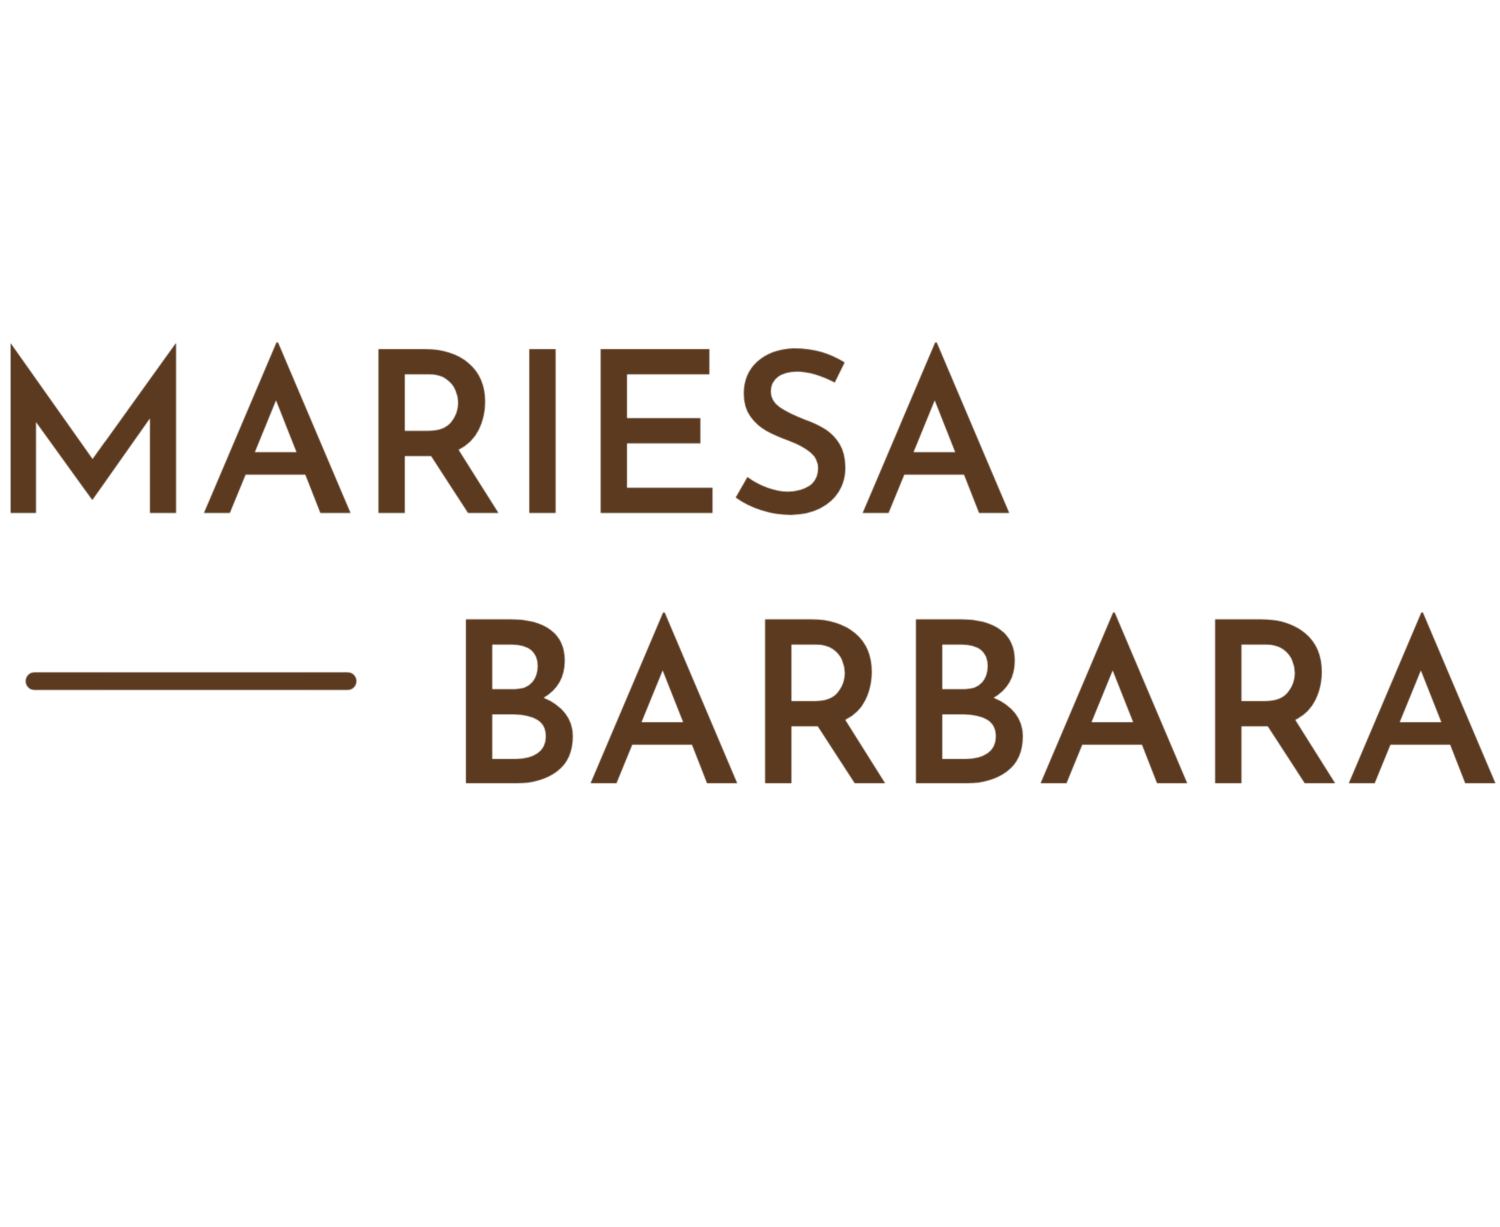 Mariesa Barbara